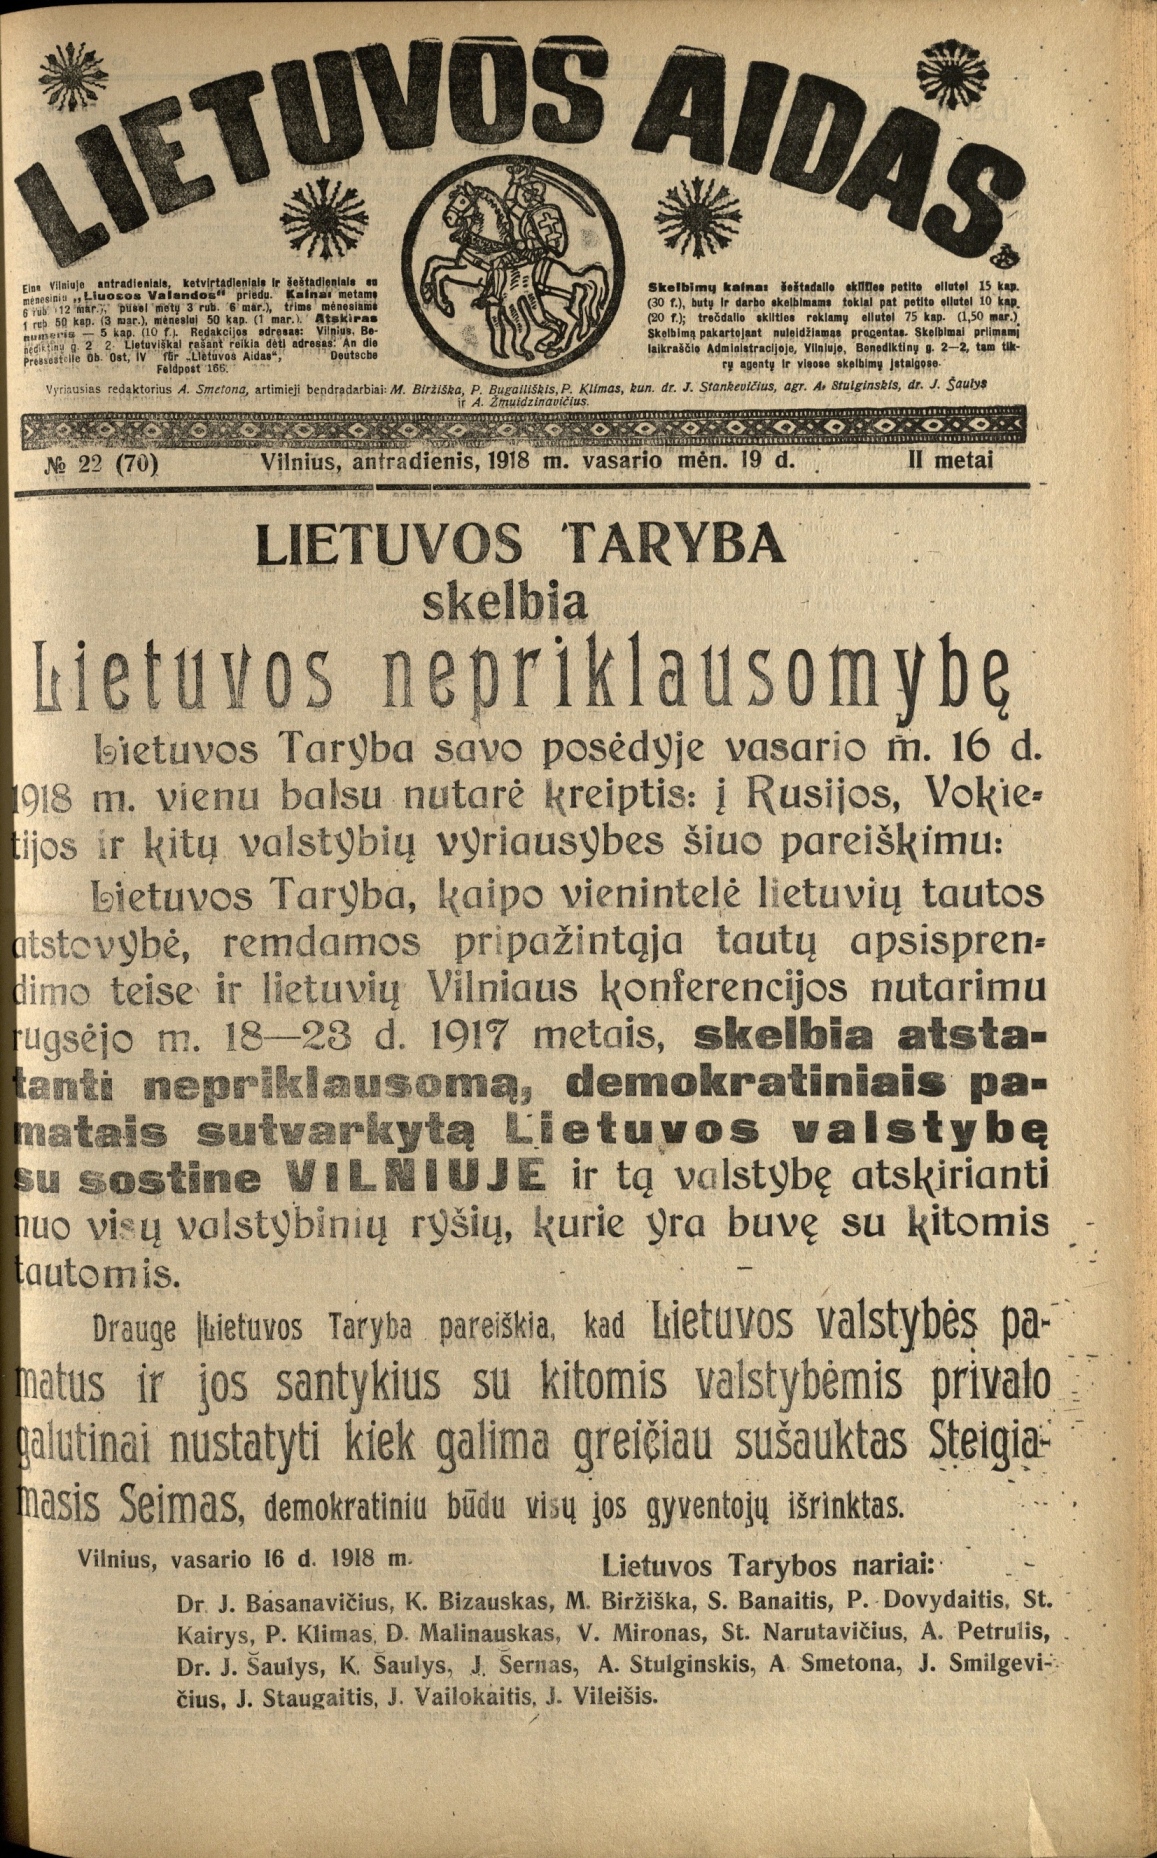 1918 m. vasario 19 d. „Lietuvos aido“ numeris, kuriame turėjo būti atspausdintas Vasario 16-osios Nepriklausomybės Aktas, iš tikro buvo atspausdintas anksčiau ir išgabentas platinti, kadangi tikrasis laikraščio redaktorius P. Klimas tikėjosi represijų